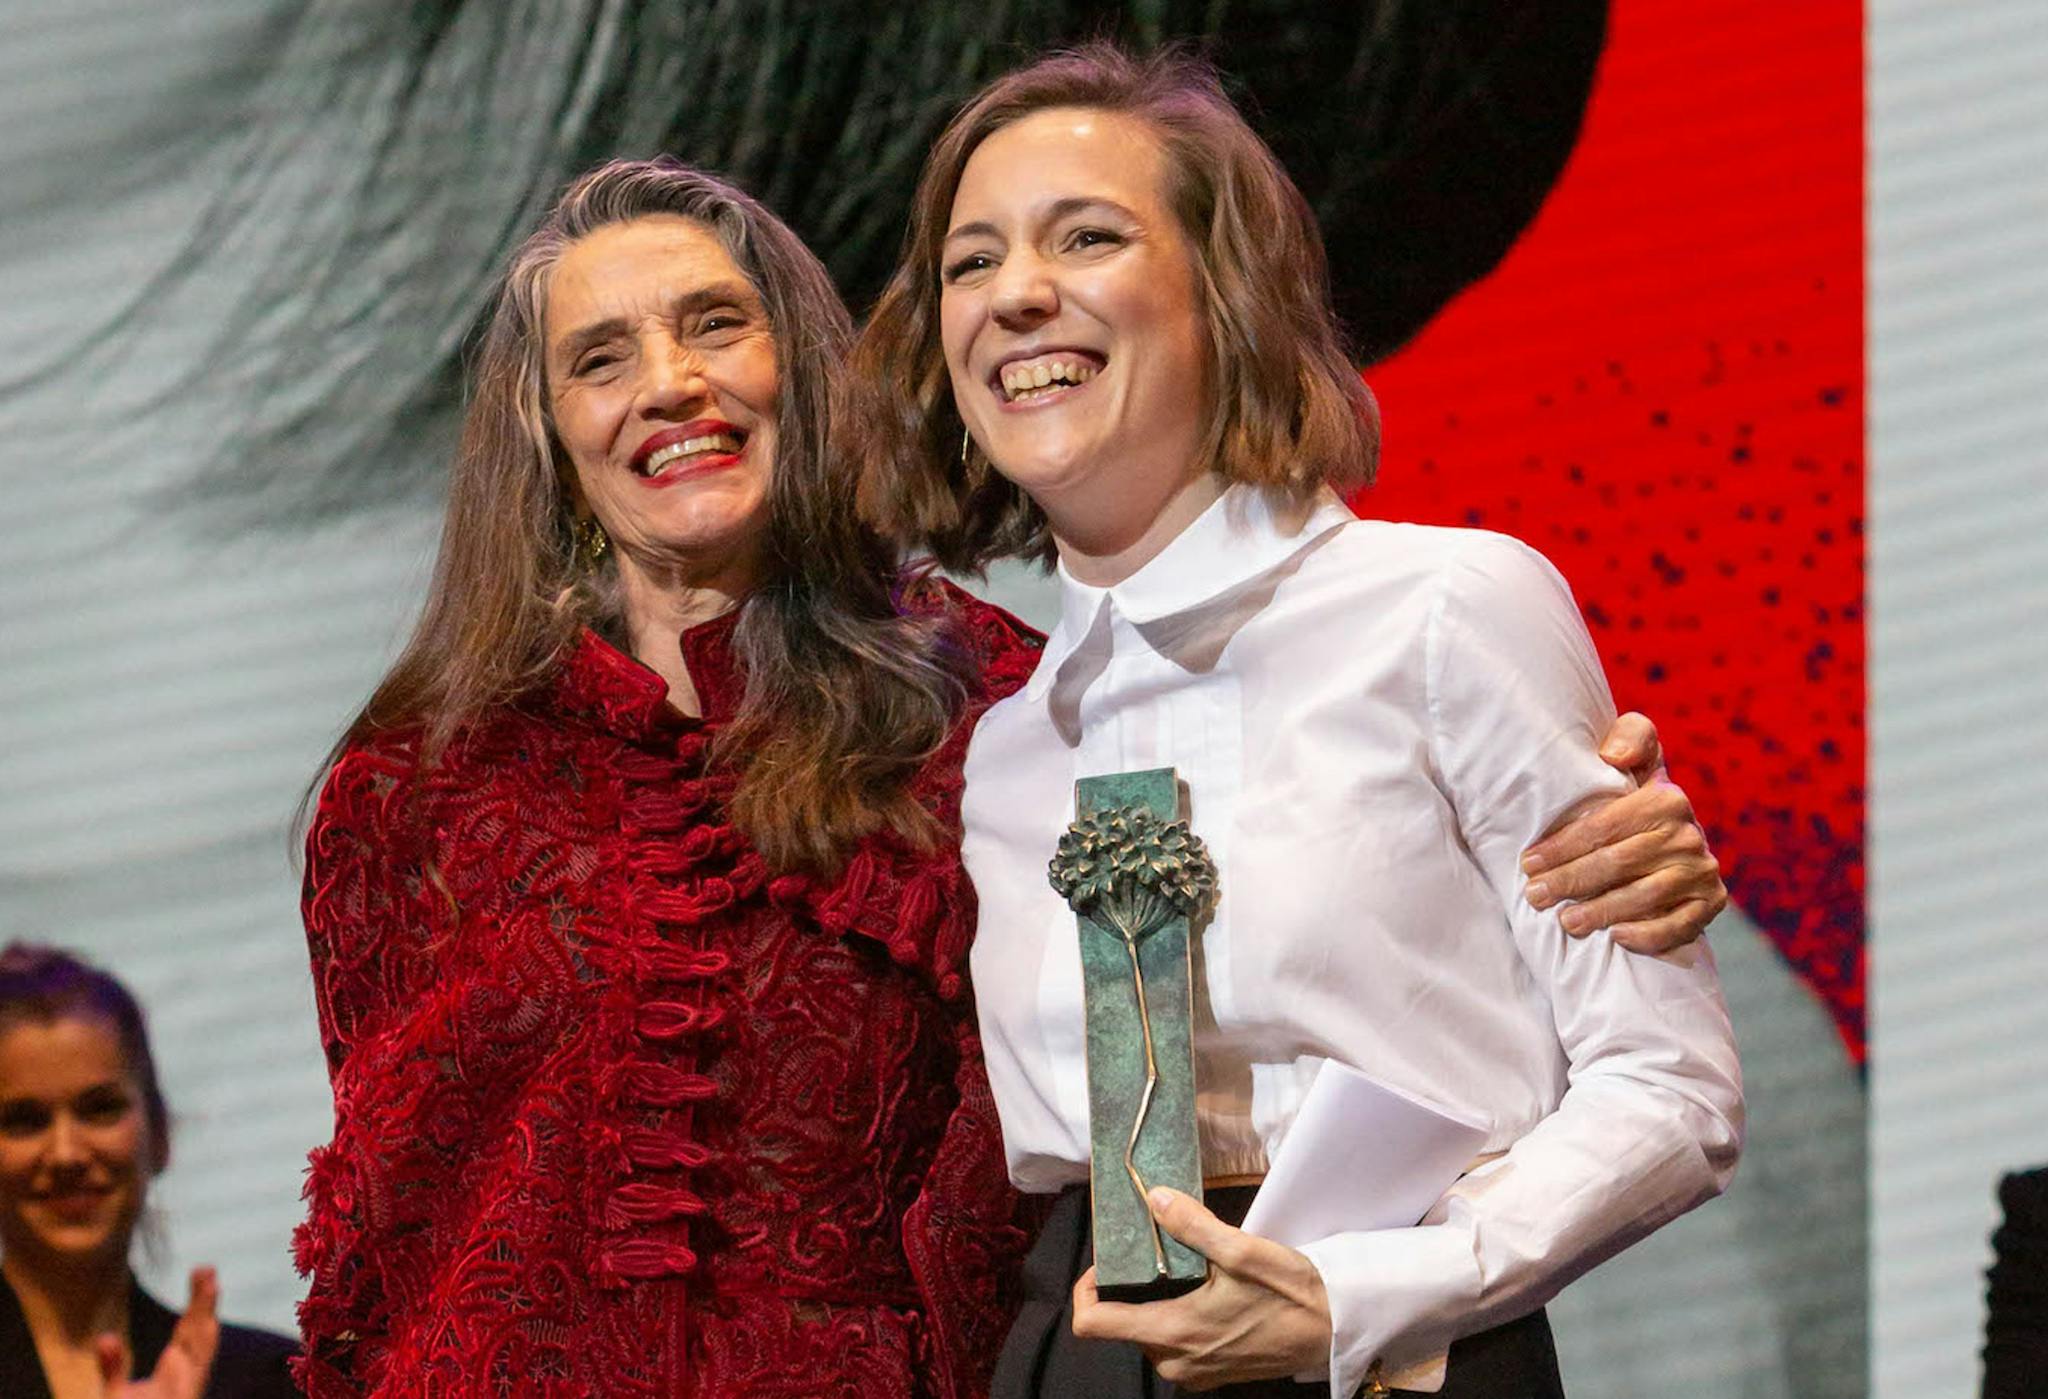 La directora Carla Simón recoge el premio Málaga Talent de manos de la actriz Ángela Molina